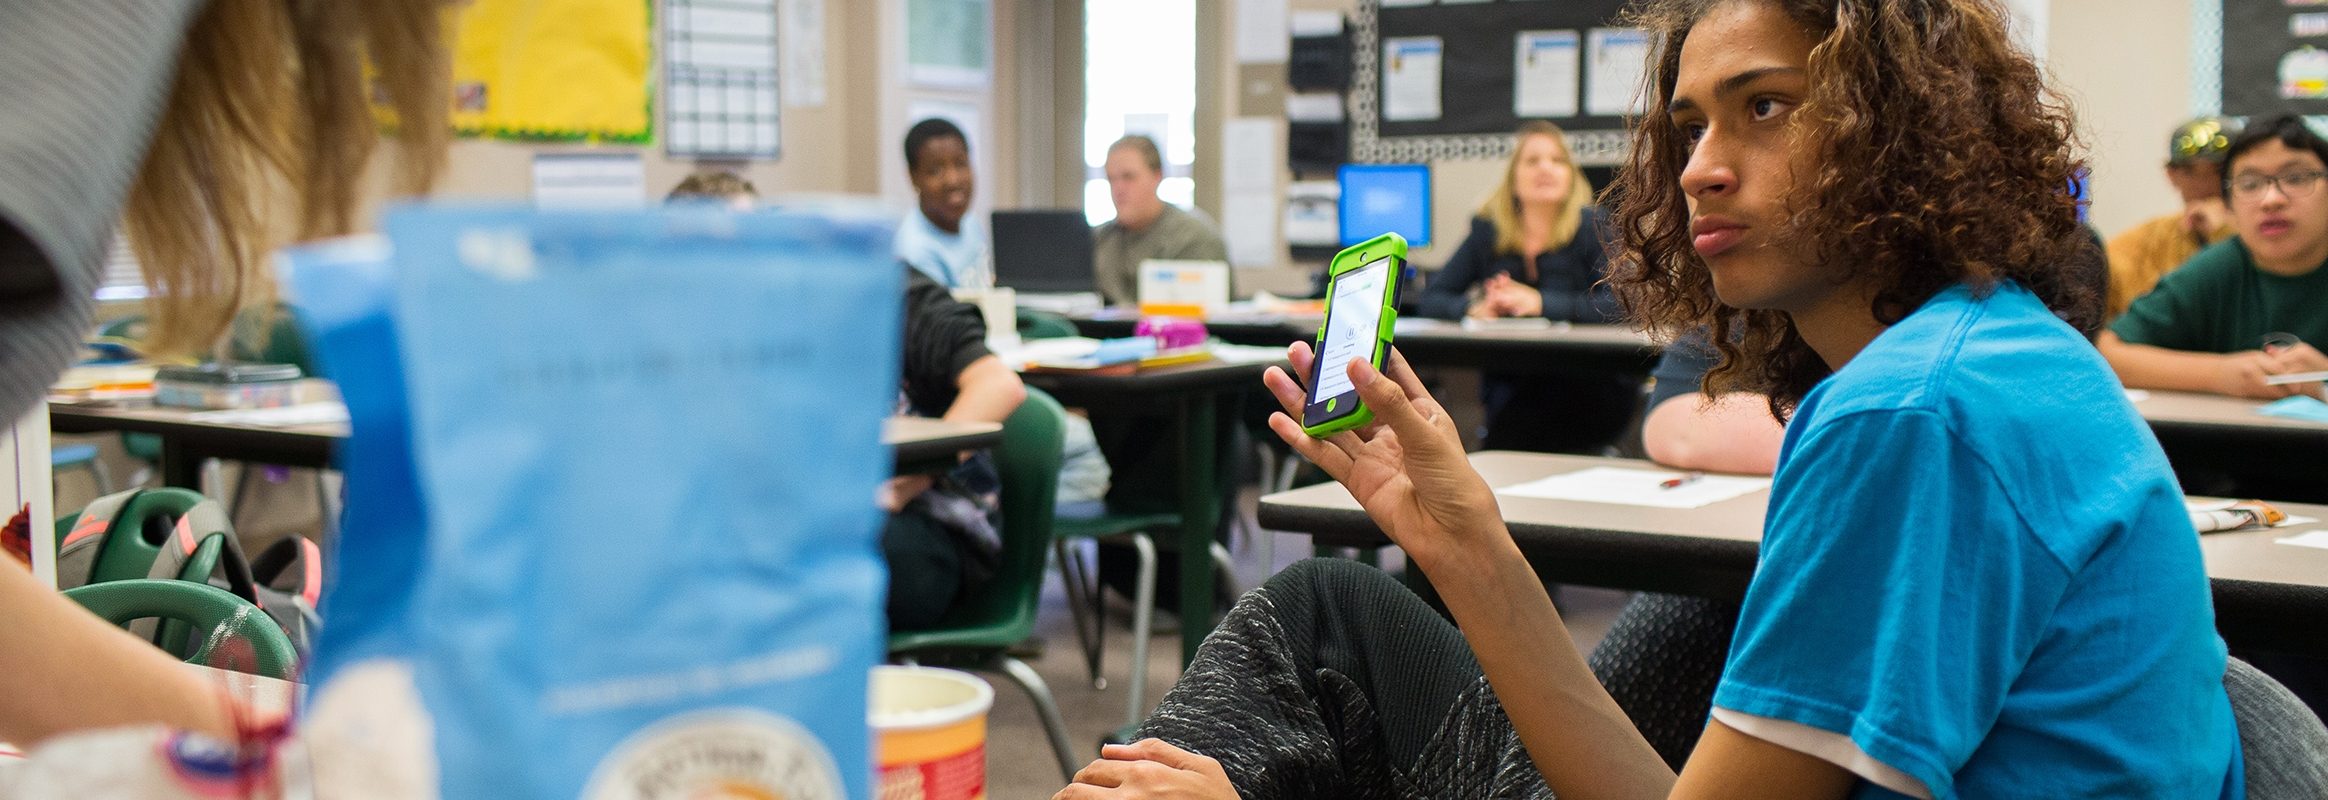 Garçon utilisant iPhone dans la salle de classe